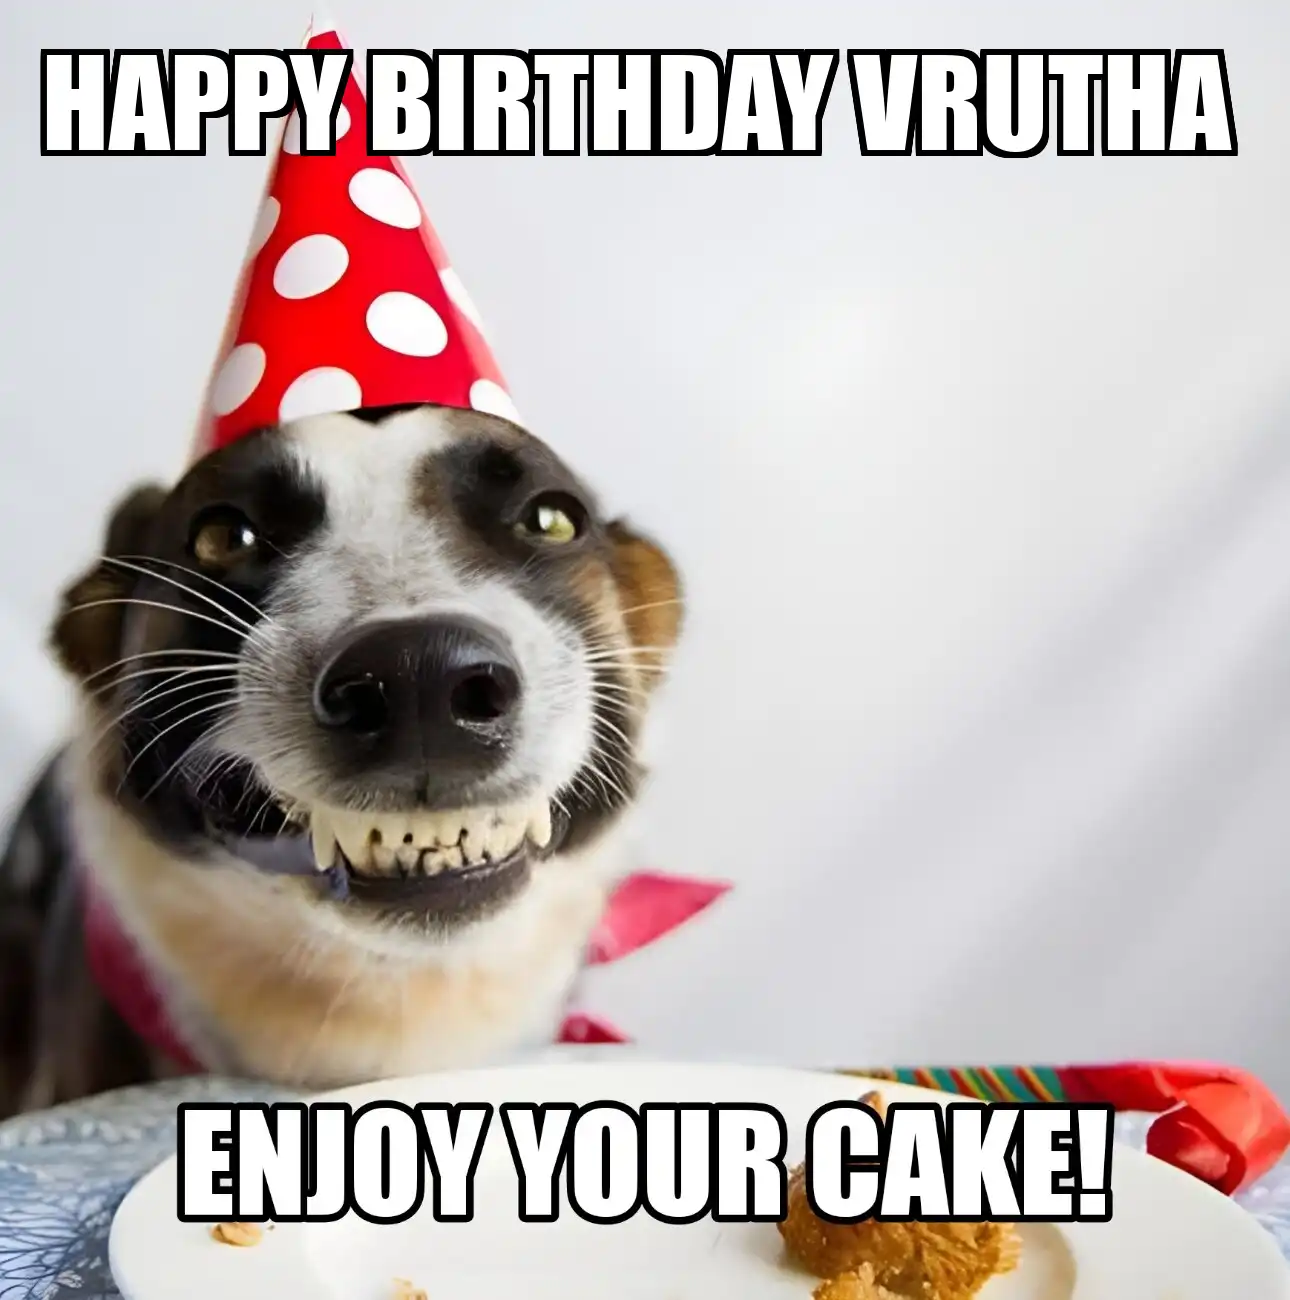 Happy Birthday Vrutha Enjoy Your Cake Dog Meme